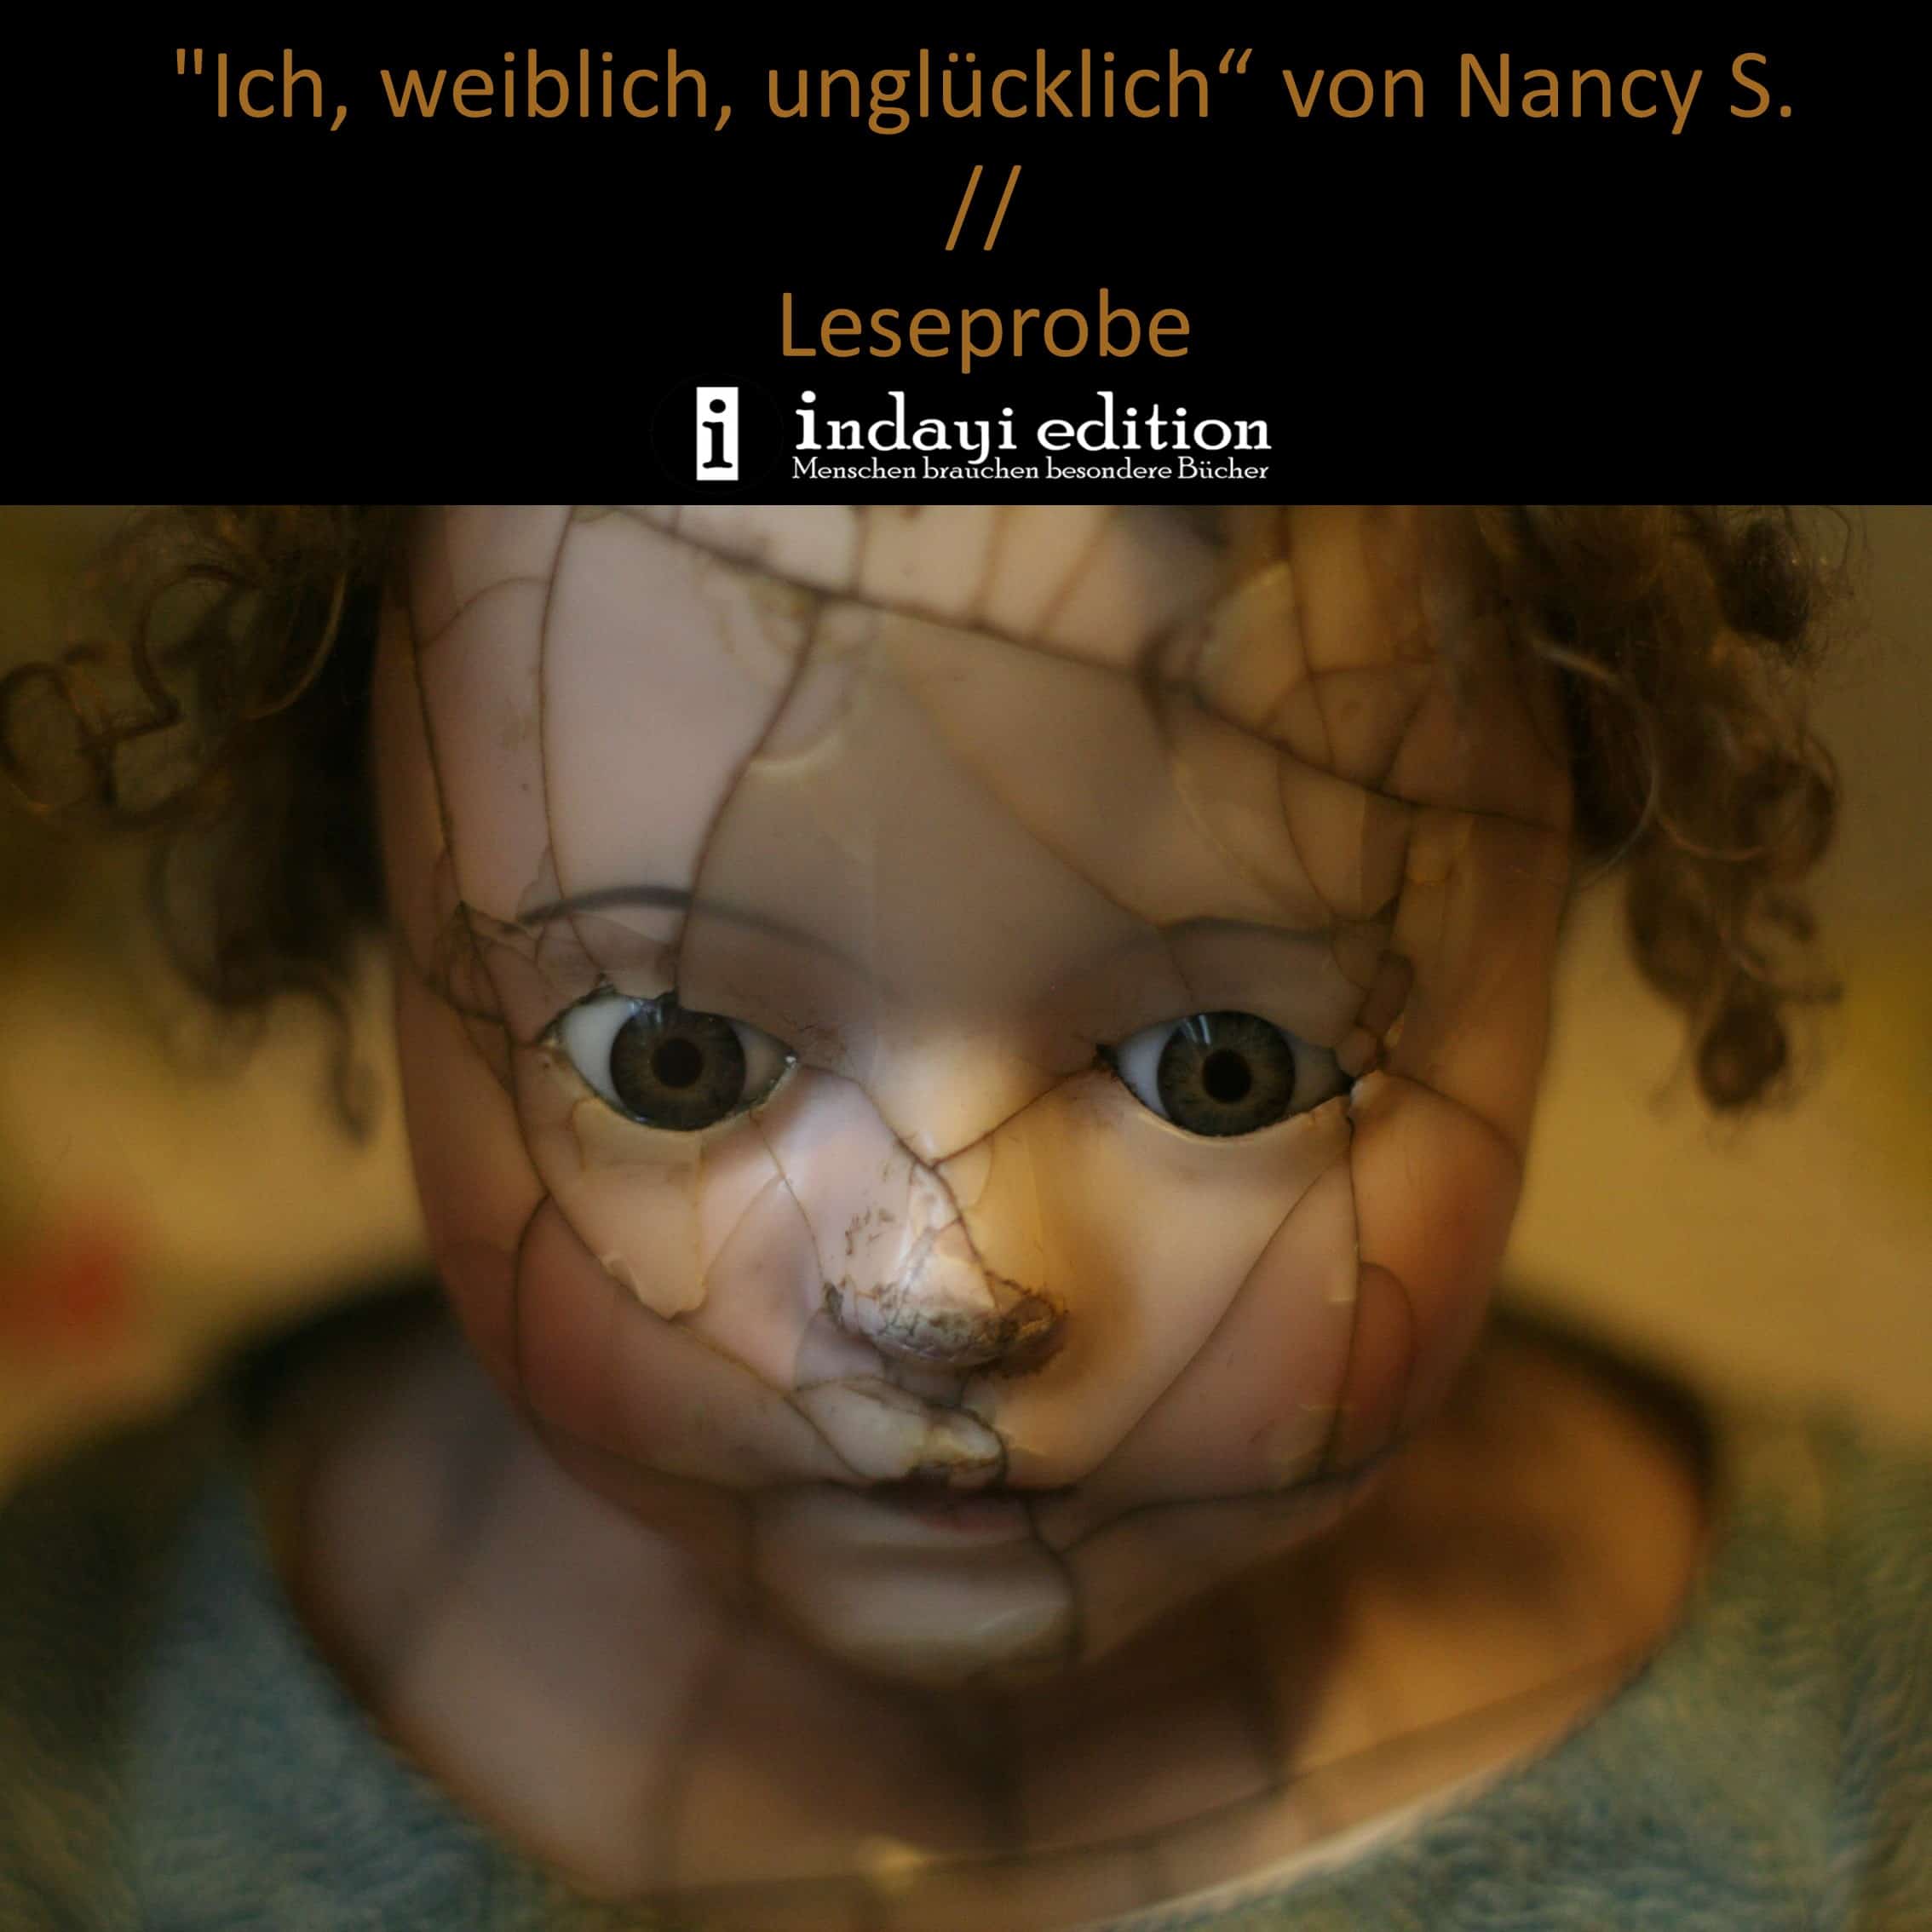 You are currently viewing “Ich, weiblich, unglücklich“ von Nancy S. // Leseprobe